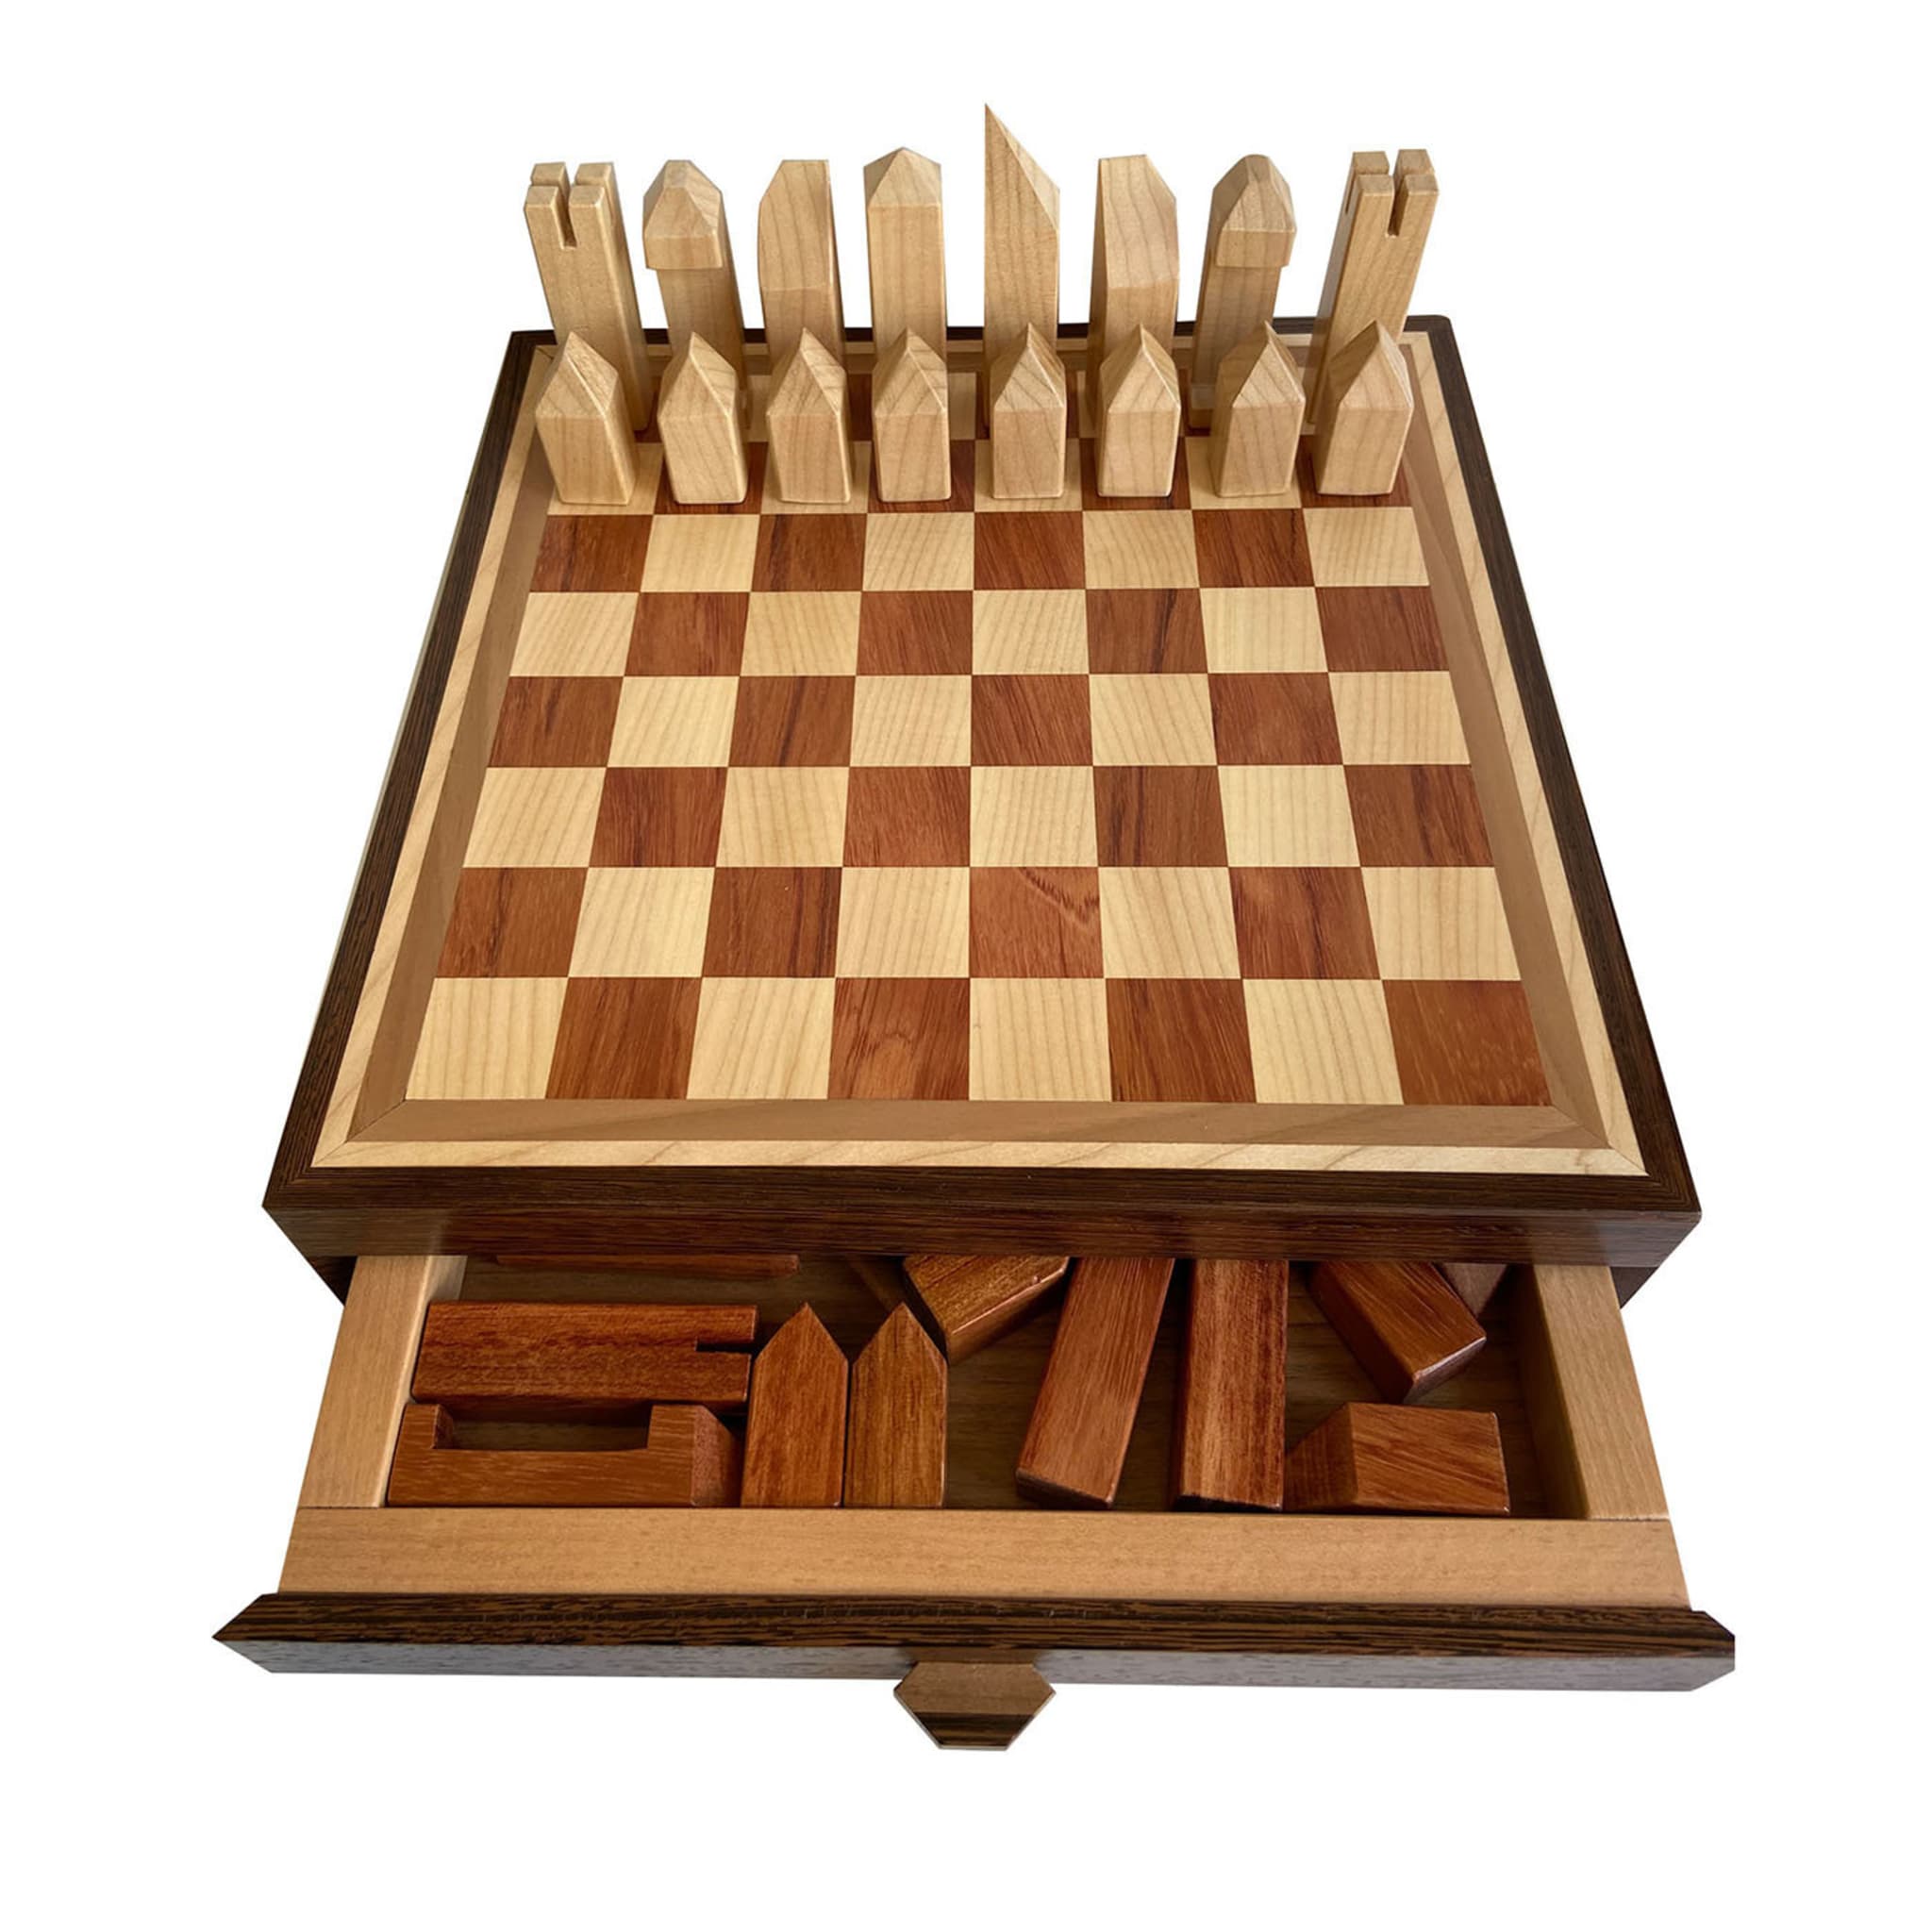 Maple and Bubinga Chessboard - Main view